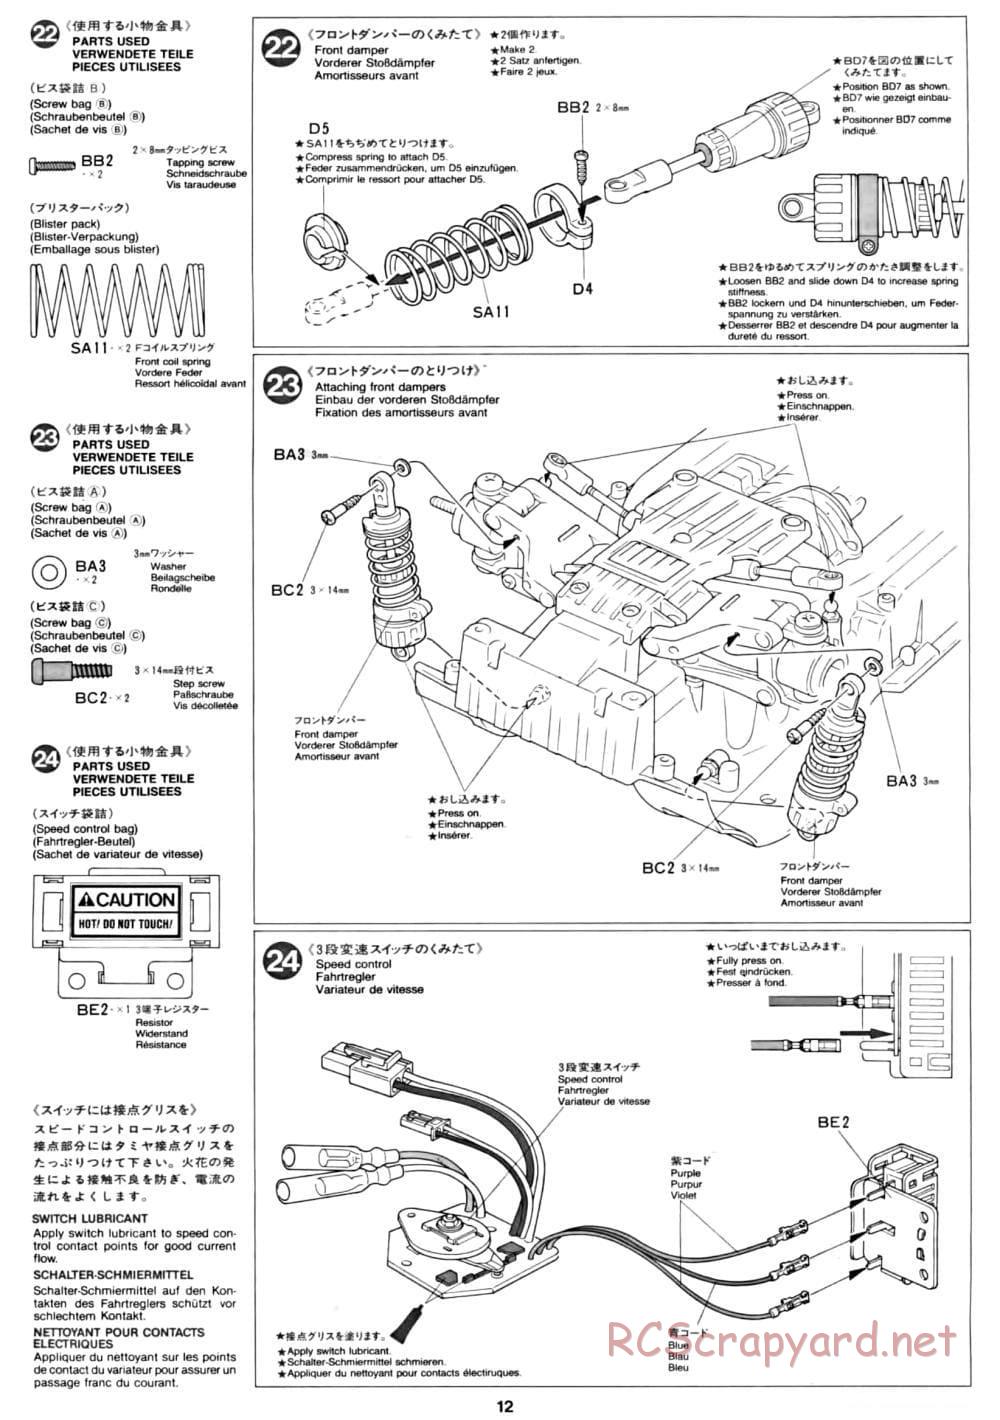 Tamiya - CC-01 Chassis - Manual - Page 12